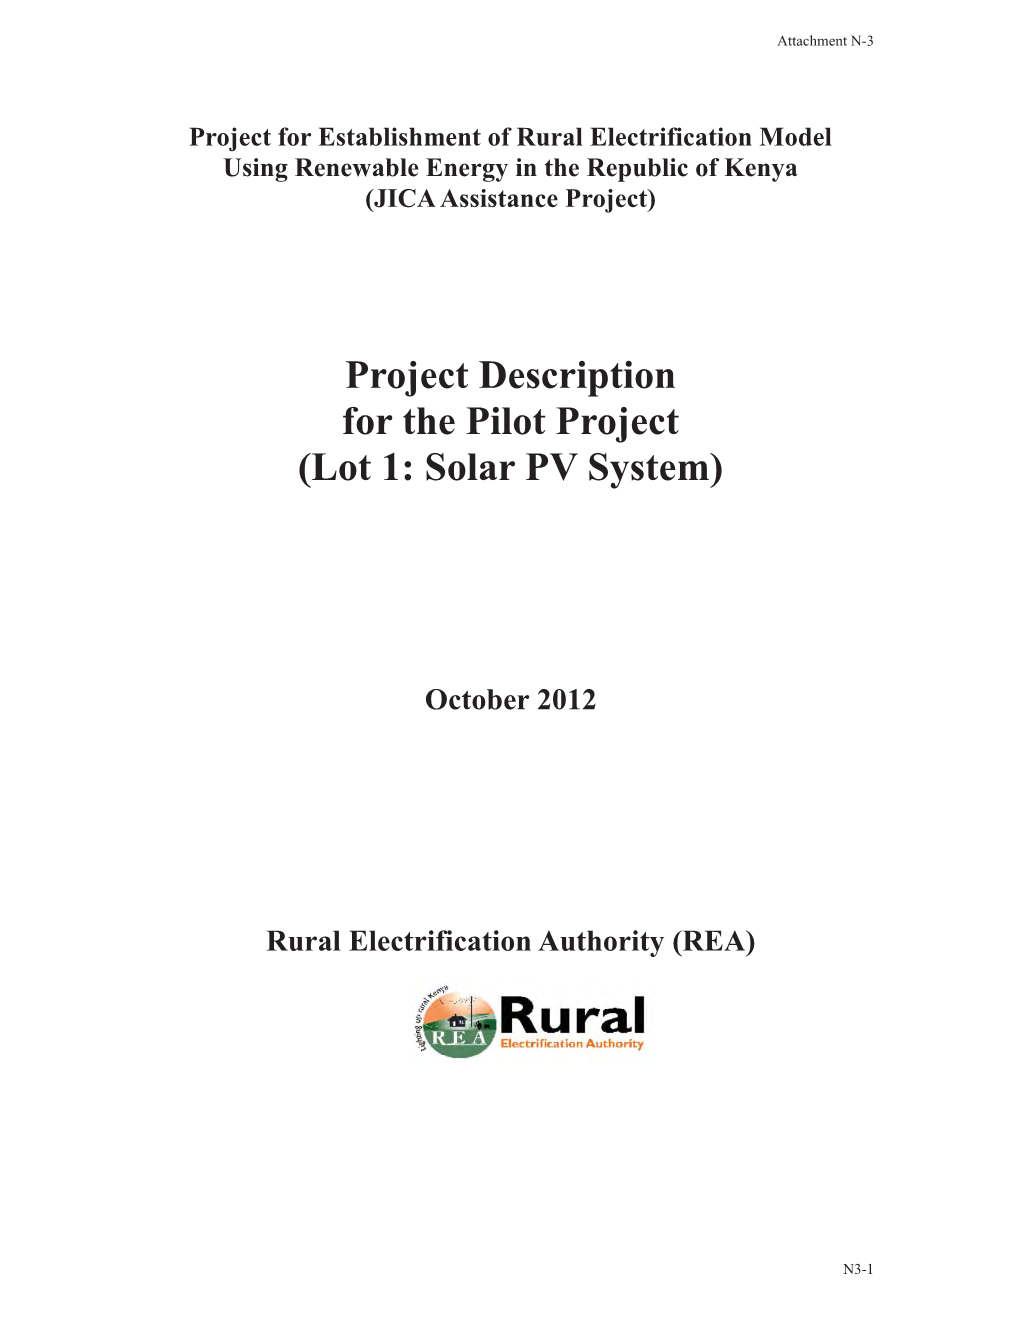 Project Description for the Pilot Project (Lot 1: Solar PV System)